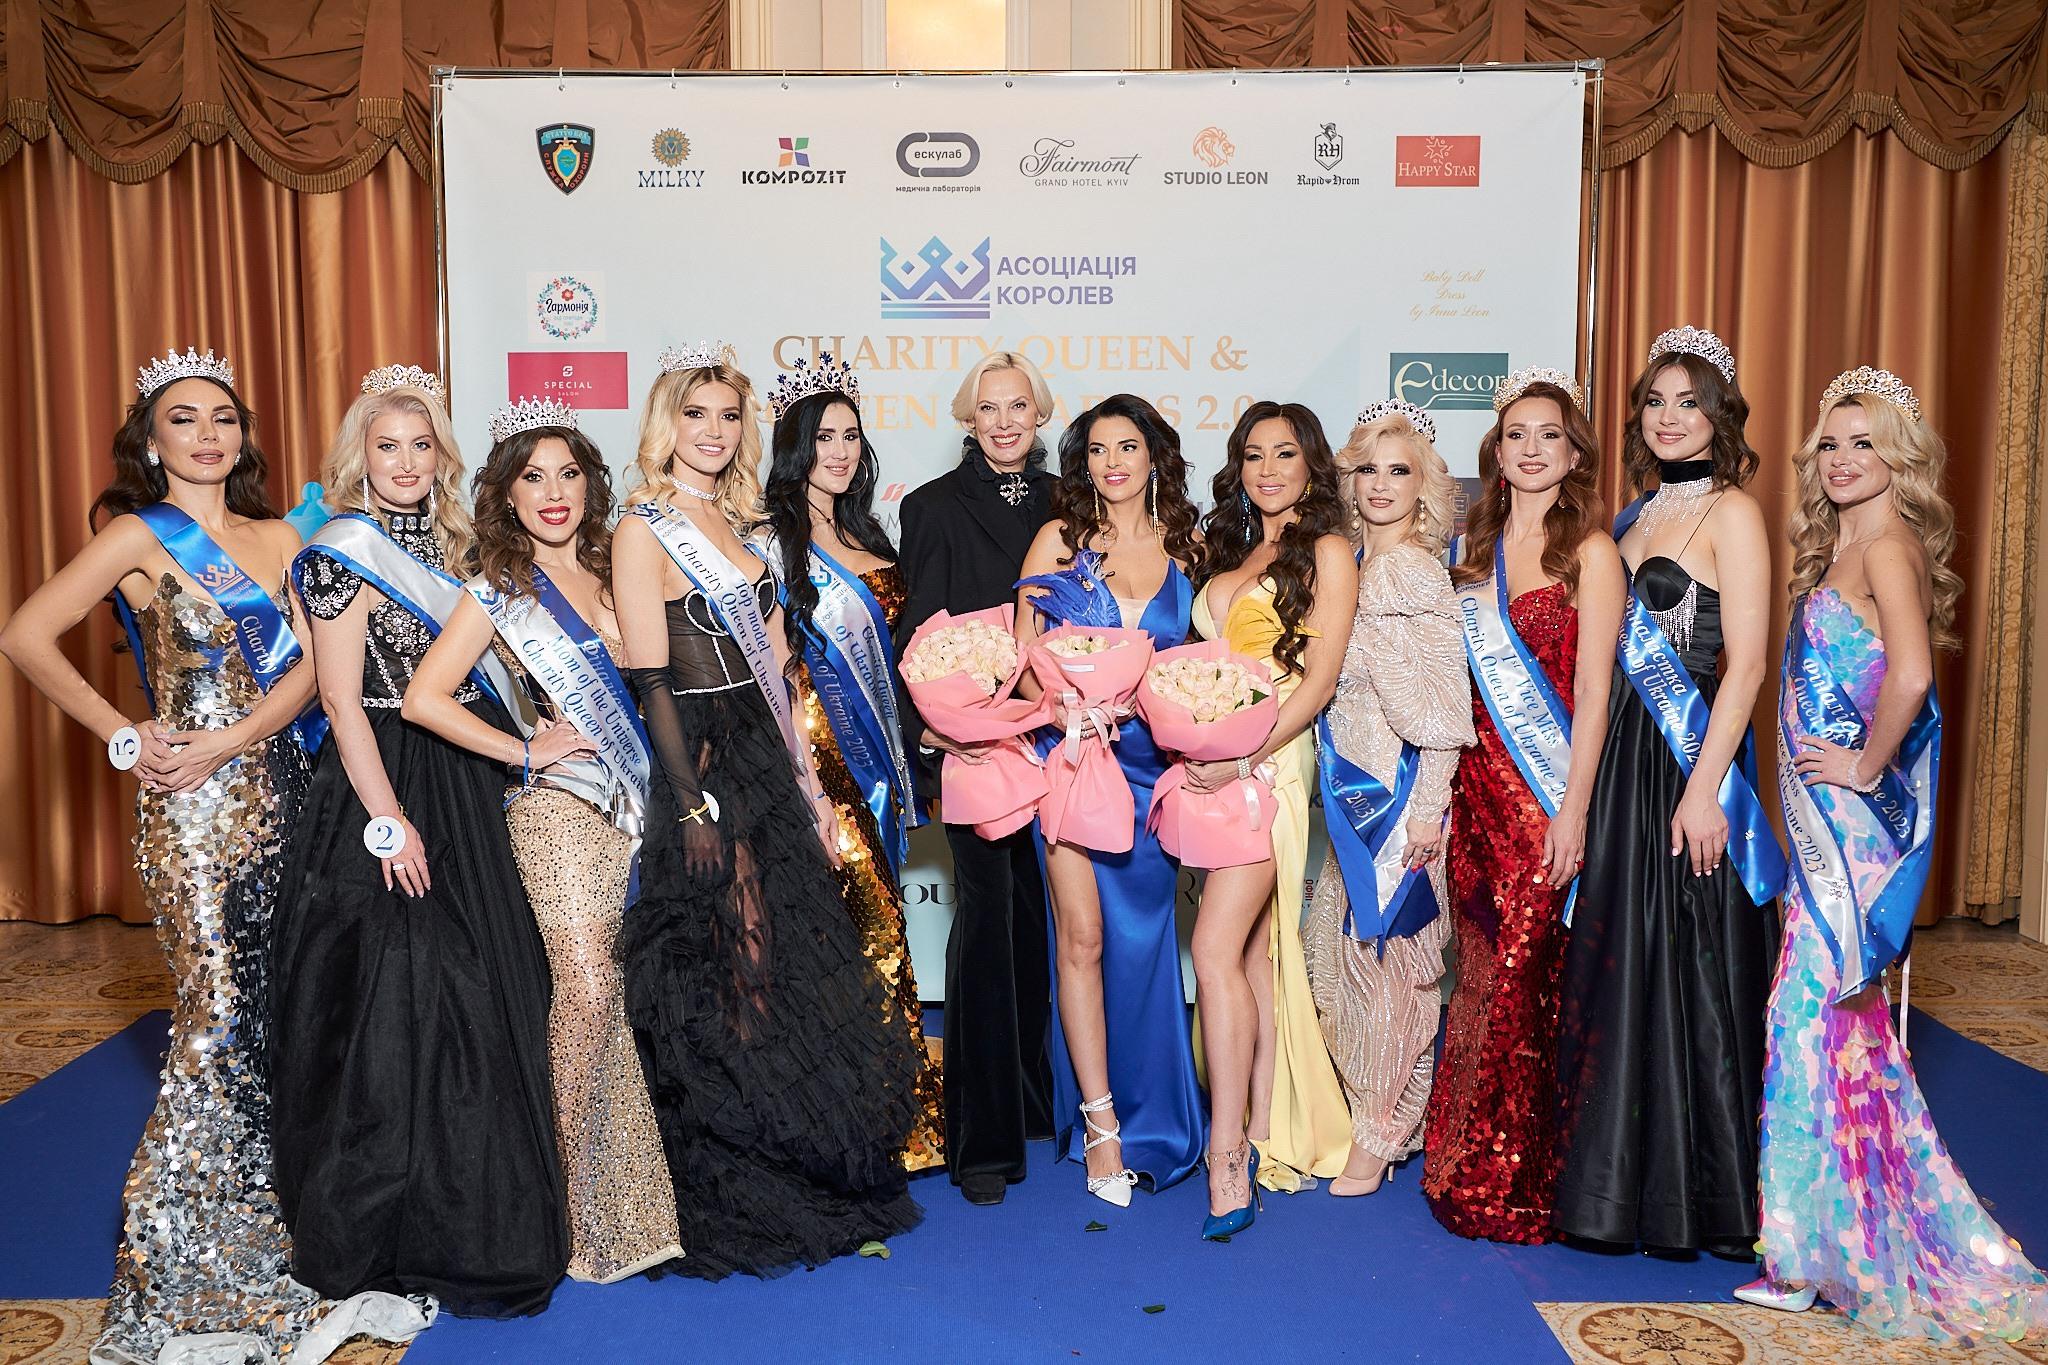 Краса врятує - в Києві пройшов масштабний всеукраїнський жіночий конкурс «Charity Queen of Ukraine»